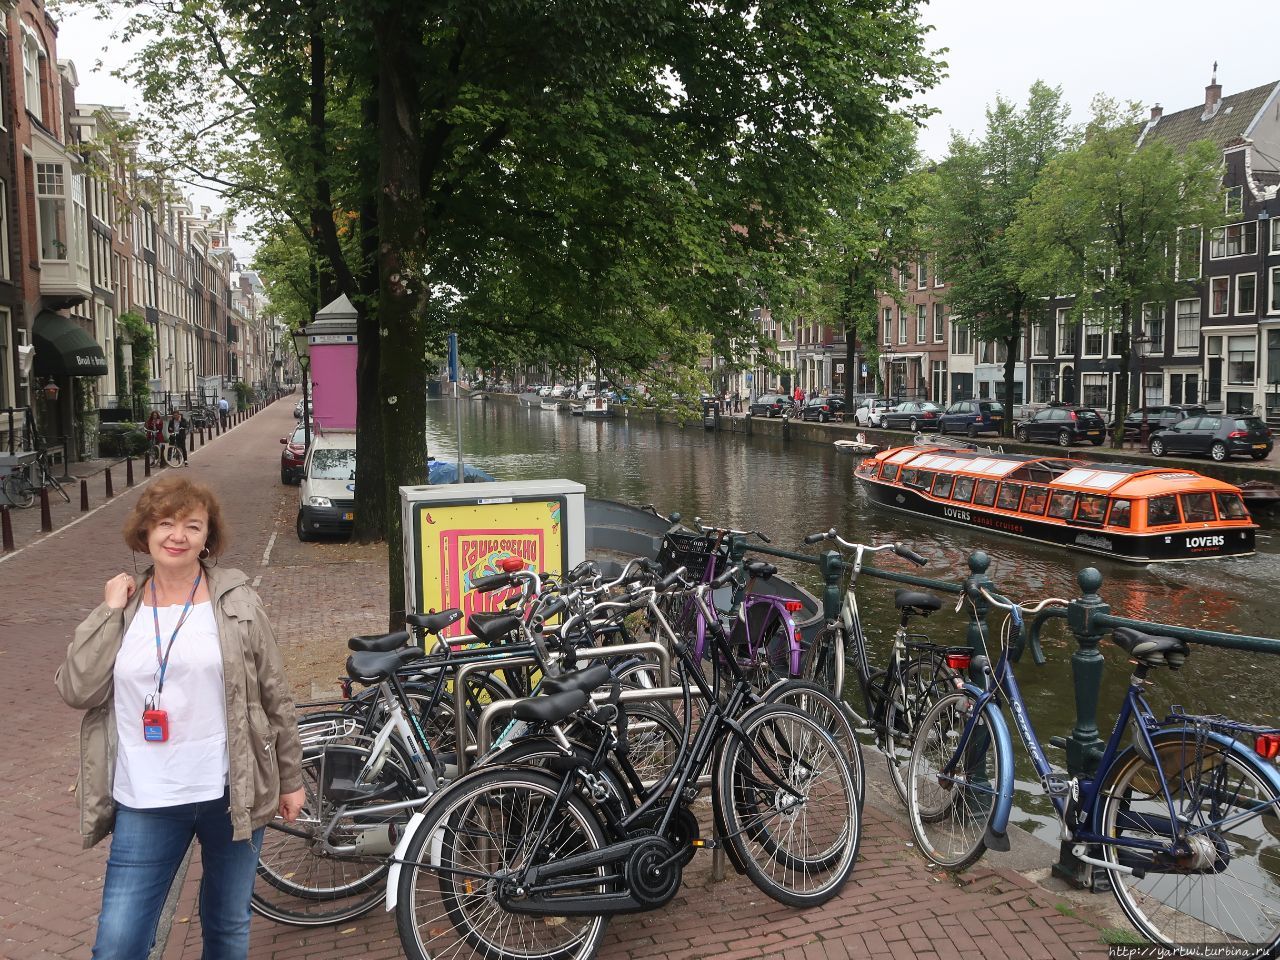 Впечатлений от Амстердама очень много  (настолько   город  необычный), фотографий тоже, погода для Амстердама была типичная. Нам повезло: дождь пошел не сразу, но немного времени для самостоятельной прогулки по Амстердаму отнял. Теперь по порядку ... Амстердам, Нидерланды